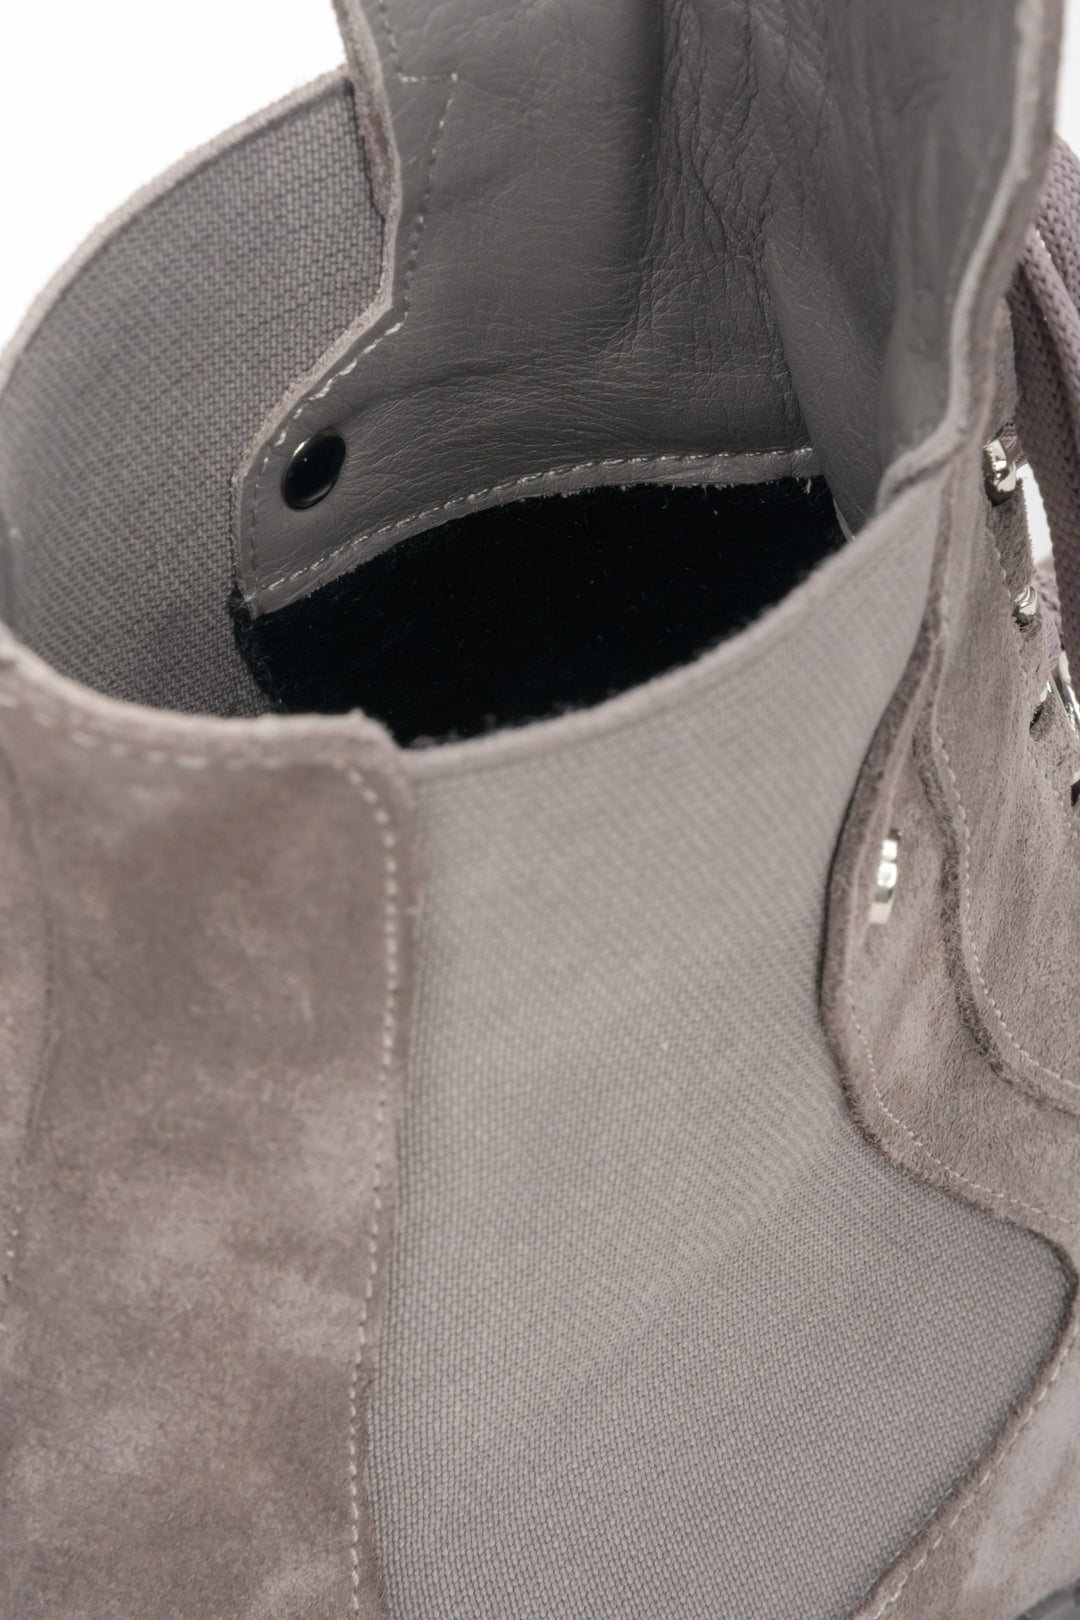 Welurowo-tekstylne szare botki damskie Estro - zbliżenie na wnętrze buta.